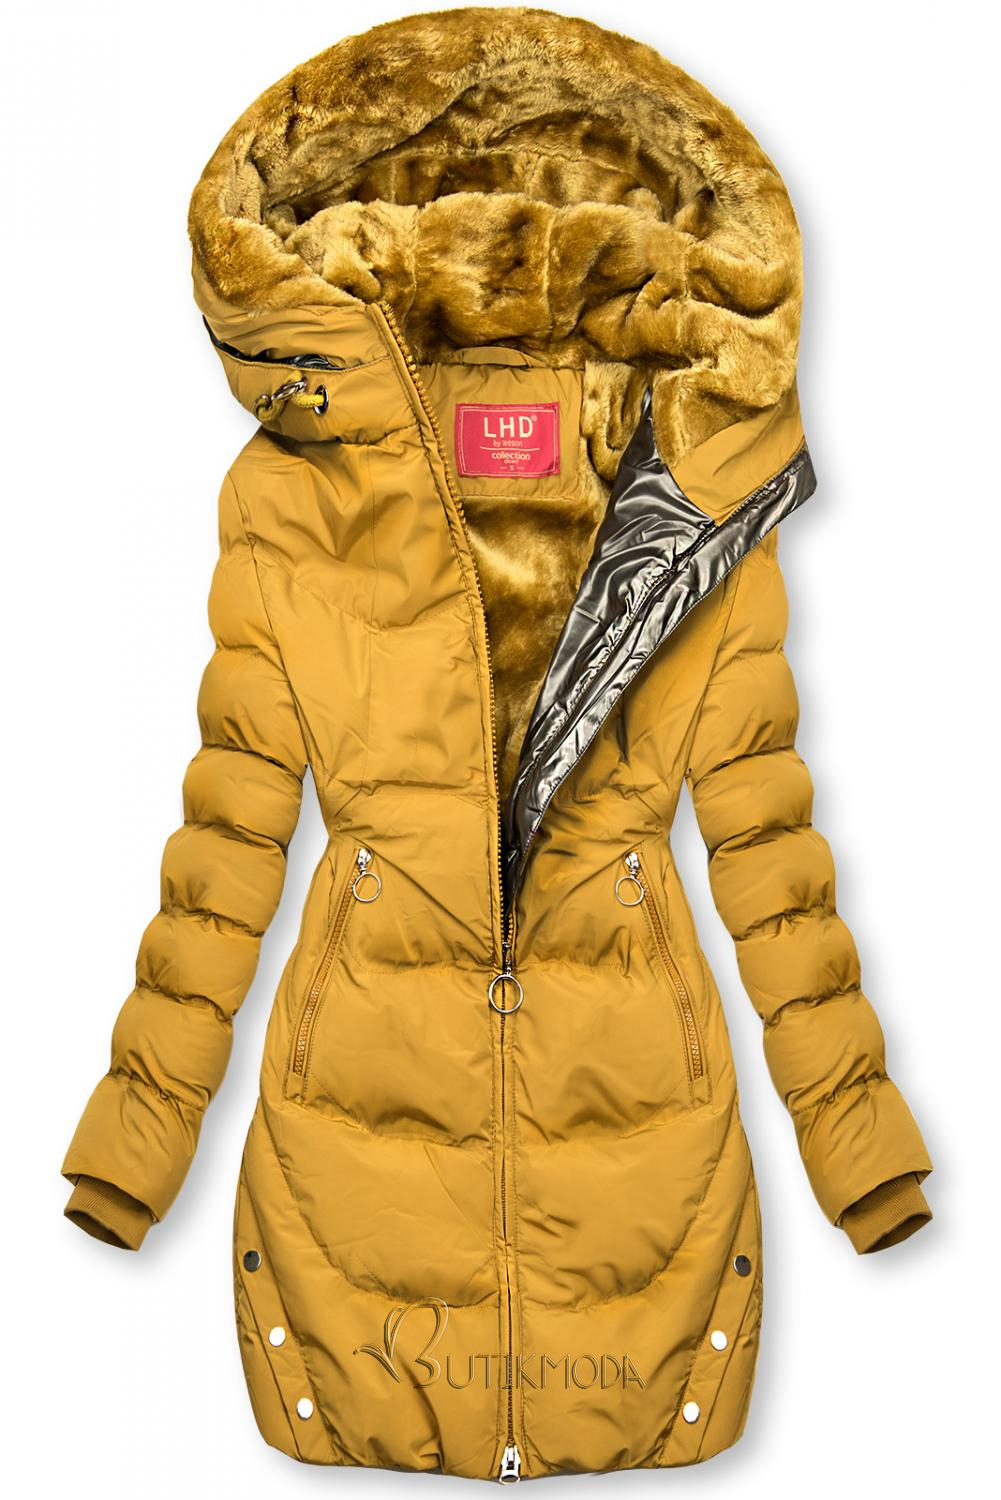 Sárga színű téli kabát ezüstszürke színű szegéllyel